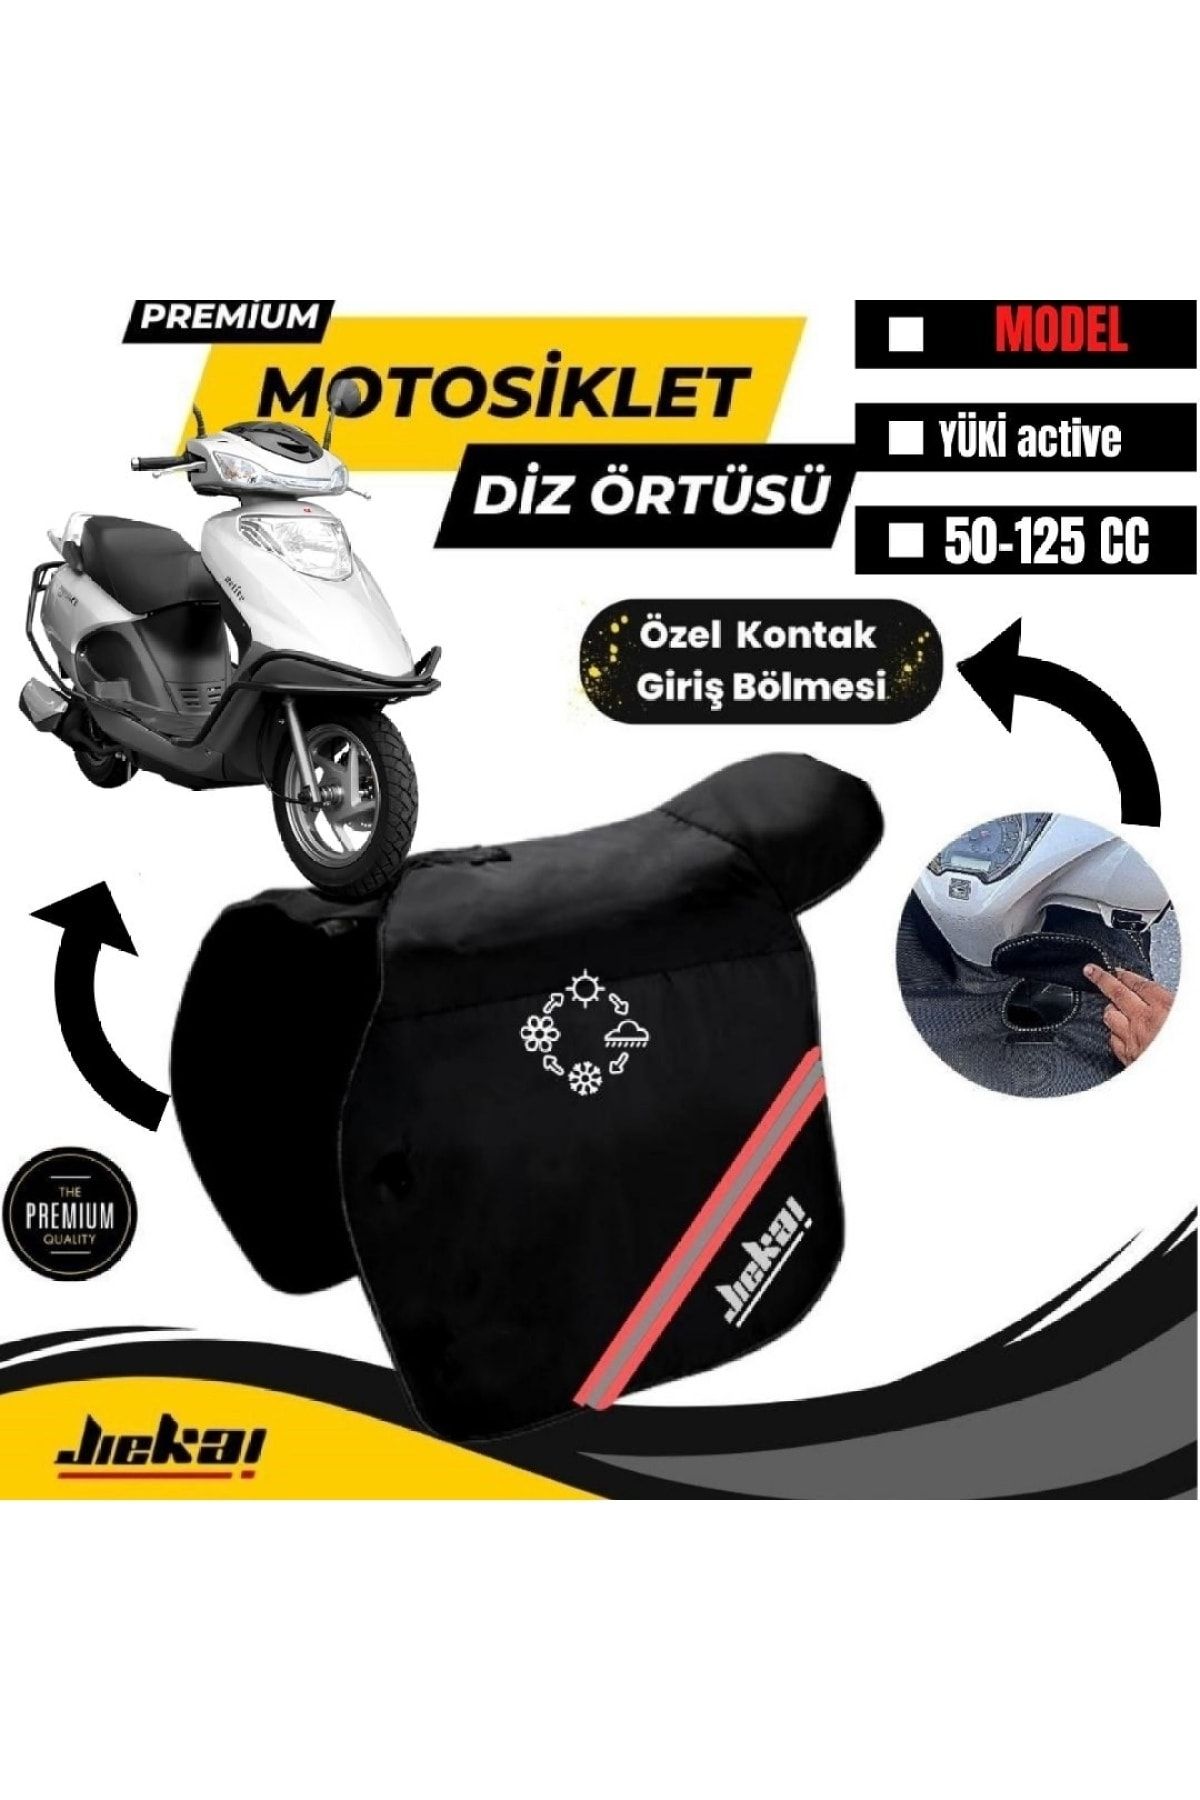 Motobros Yuki Actıva Motosiklet Diz Örtüsü Bacak Koruma Örtüsü Reflektörlü Su Ve Rüzgar Geçirmez